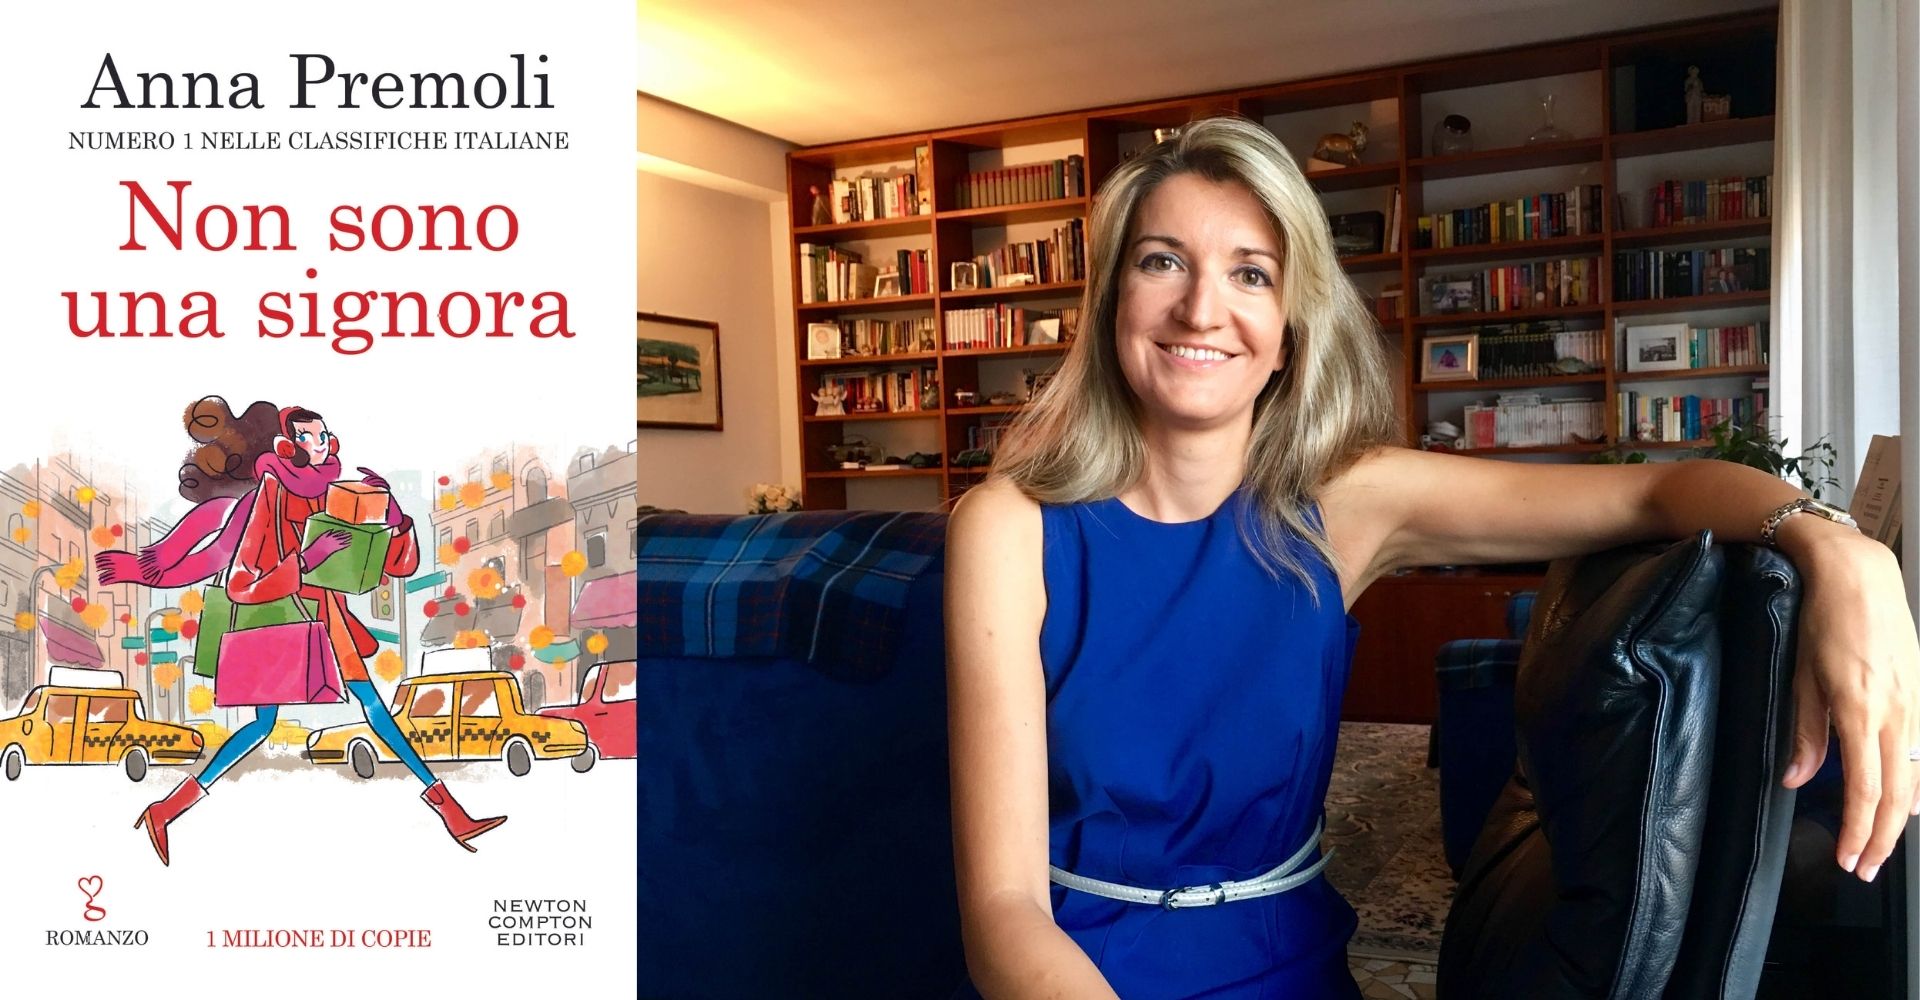 Libri proibiti o scandalosi: perché ha ancora senso battersi per la libertà di lettura - di Anna Premoli